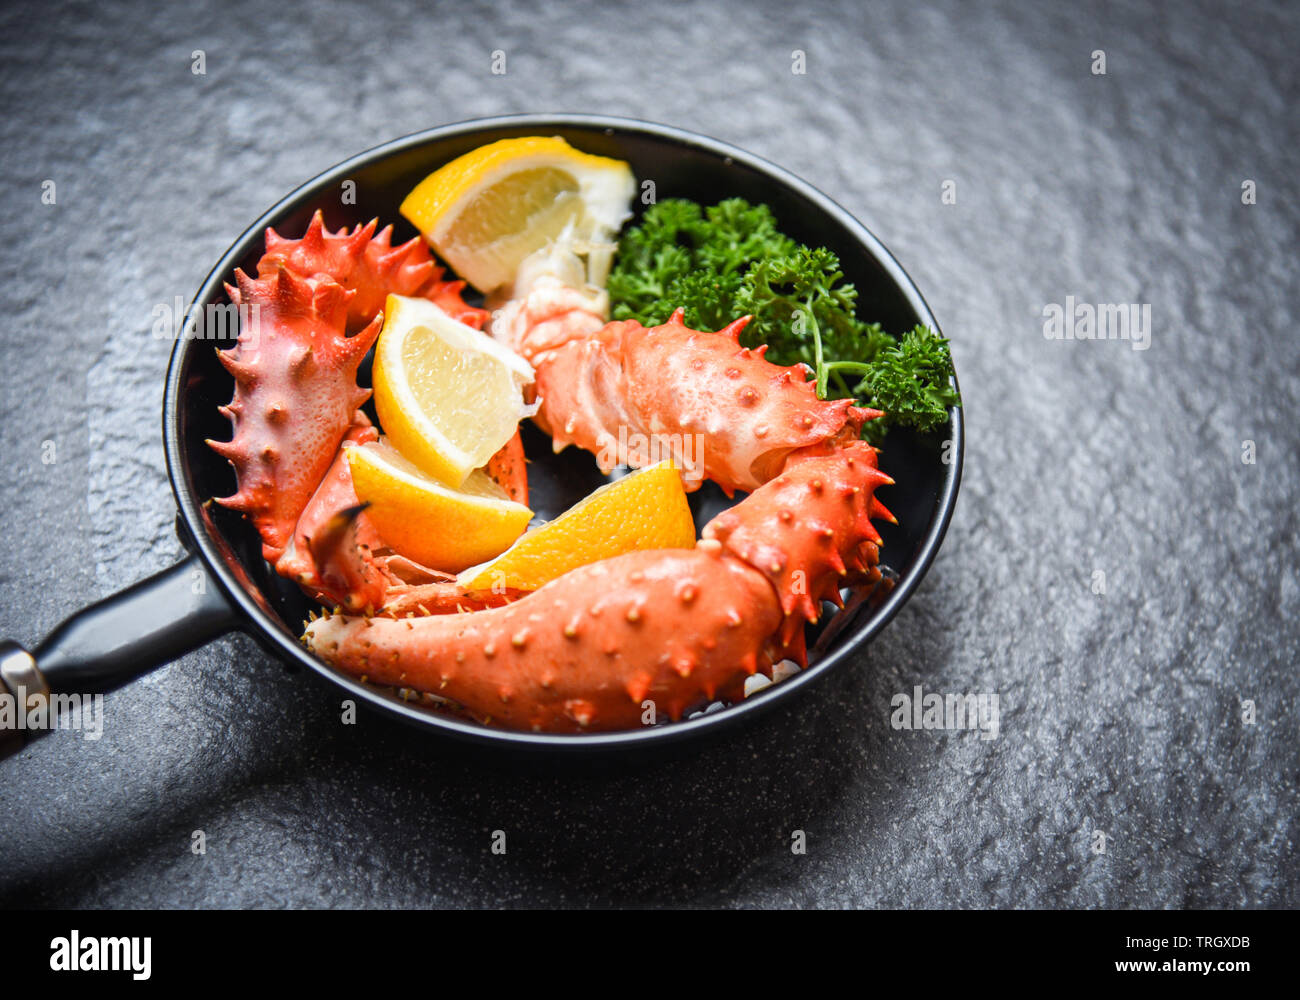 Pinces de crabe bouilli de fruits de mer cuit avec du crabe royal d'Alaska pan avec du citron persil herbes et épices sur fond sombre / crabe rouge hokkaido dans un pot chaud Banque D'Images